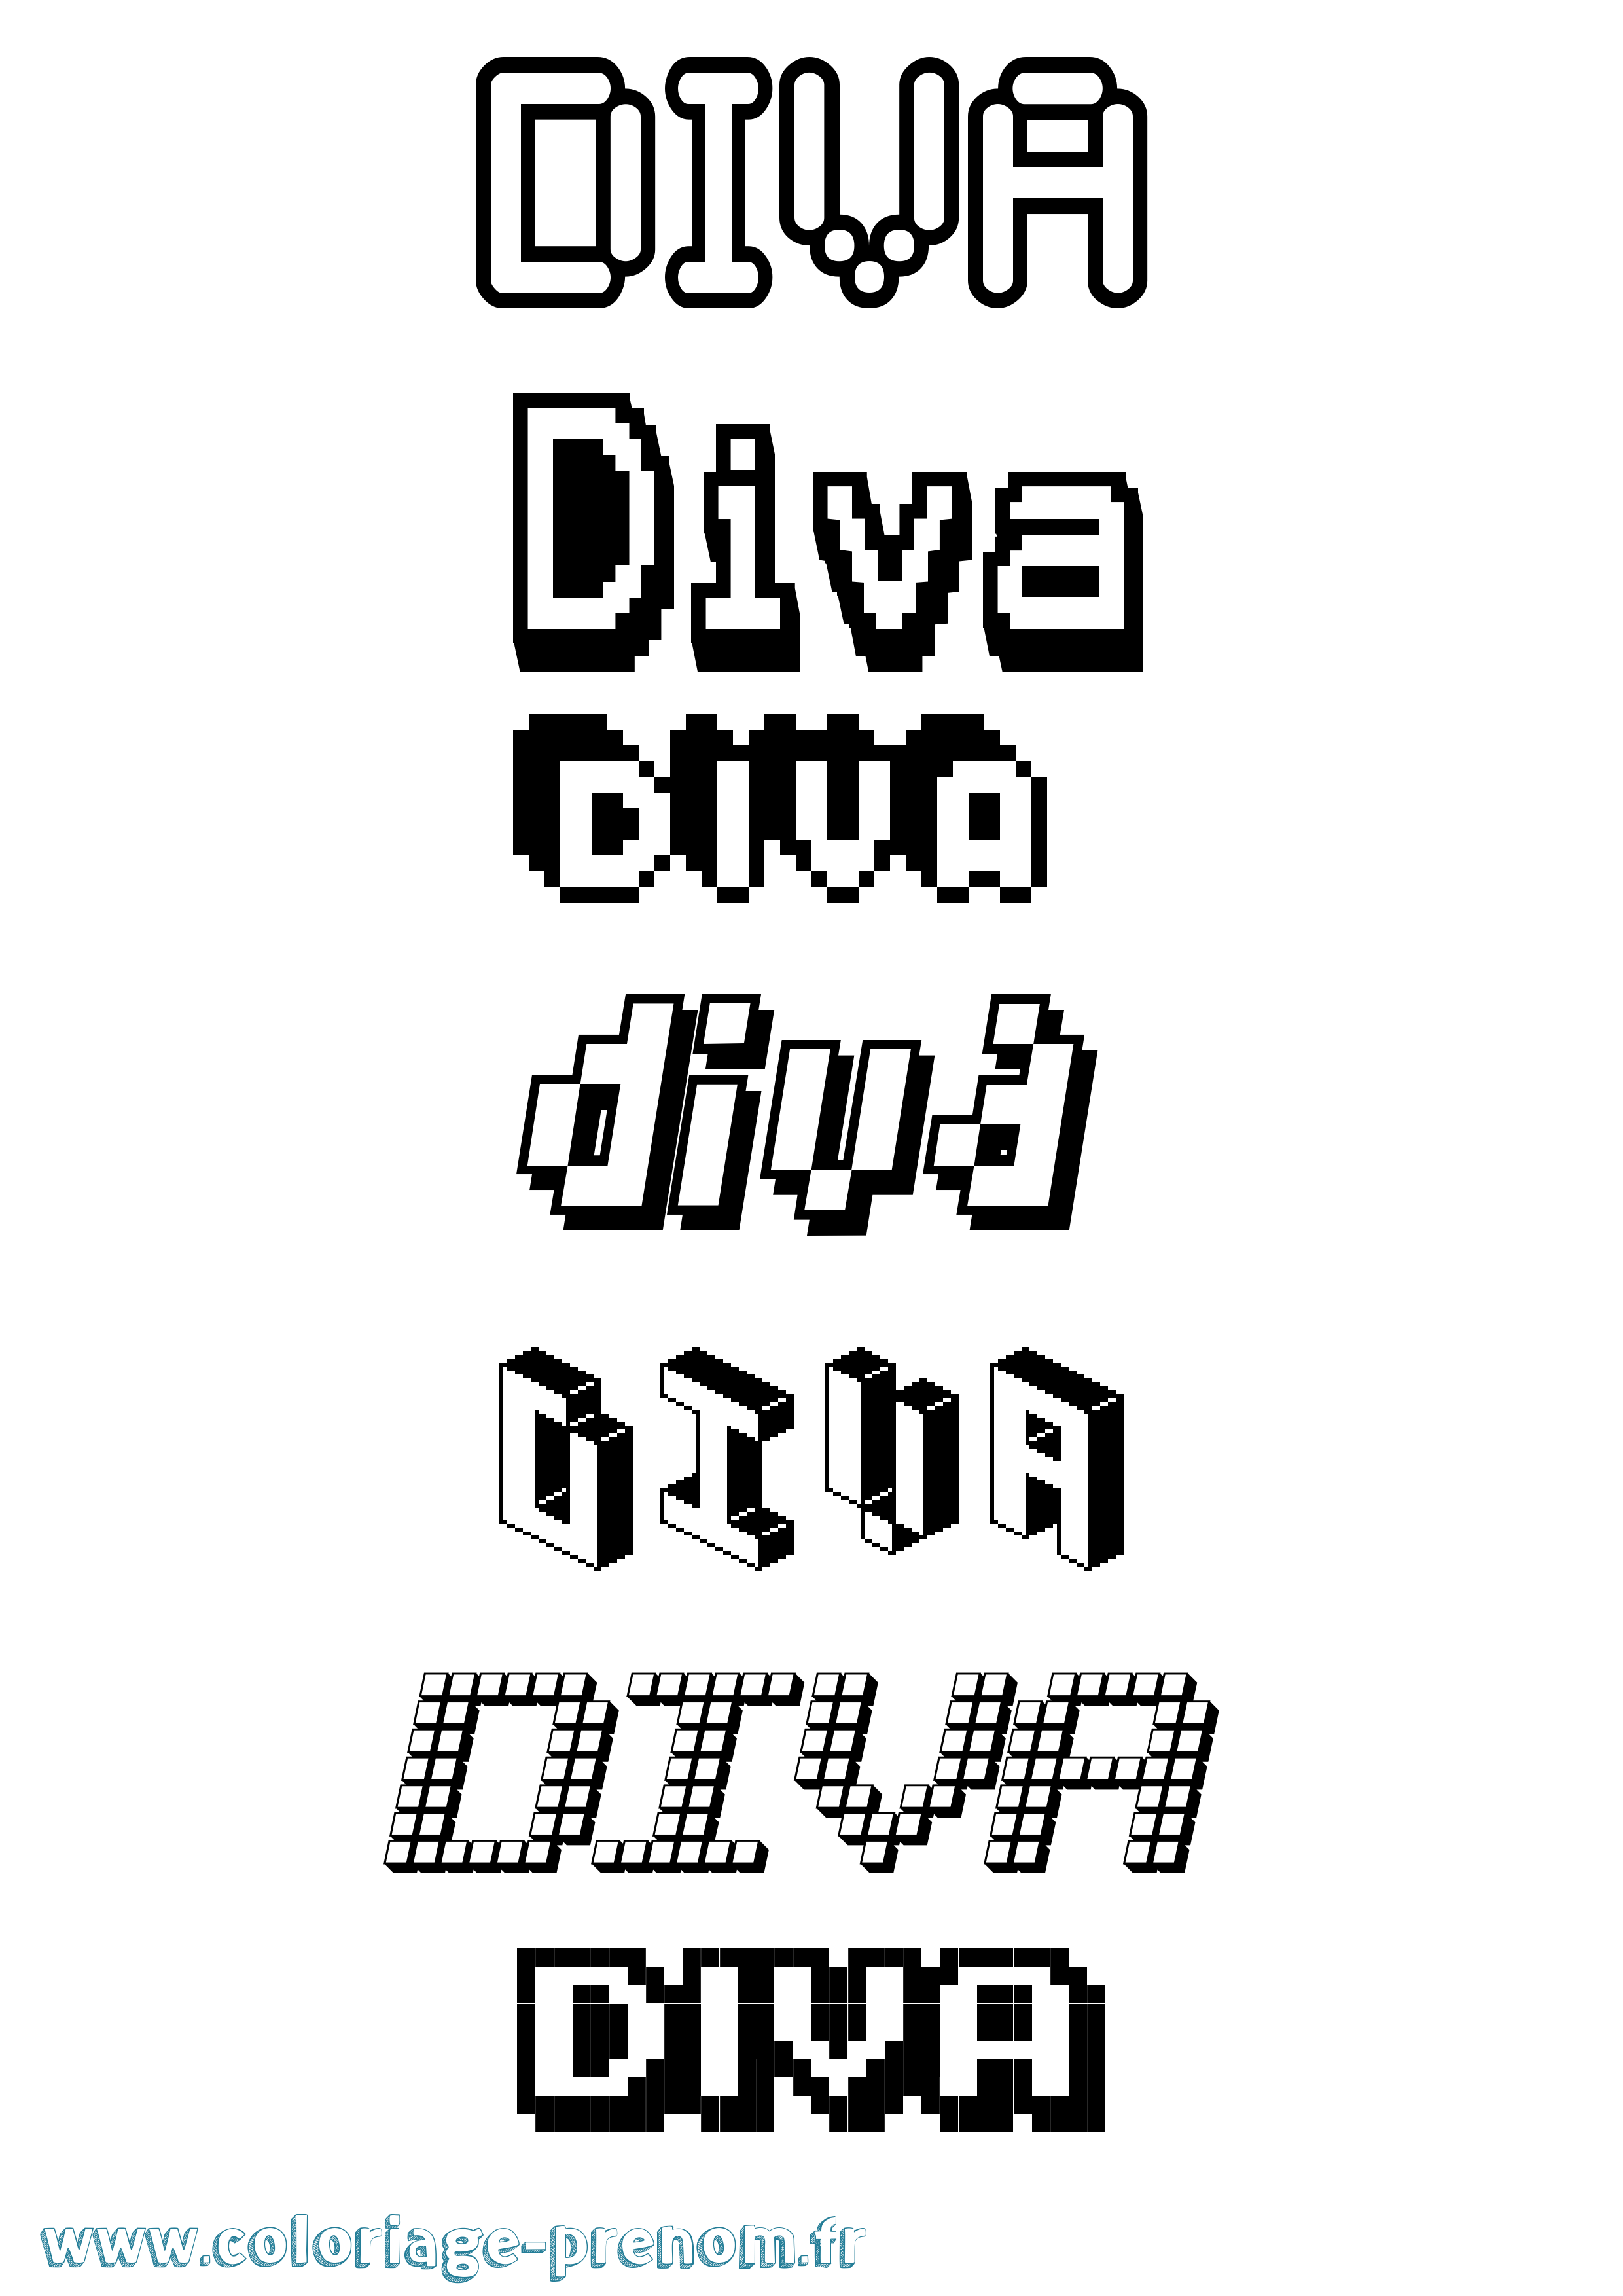 Coloriage prénom Diva Pixel